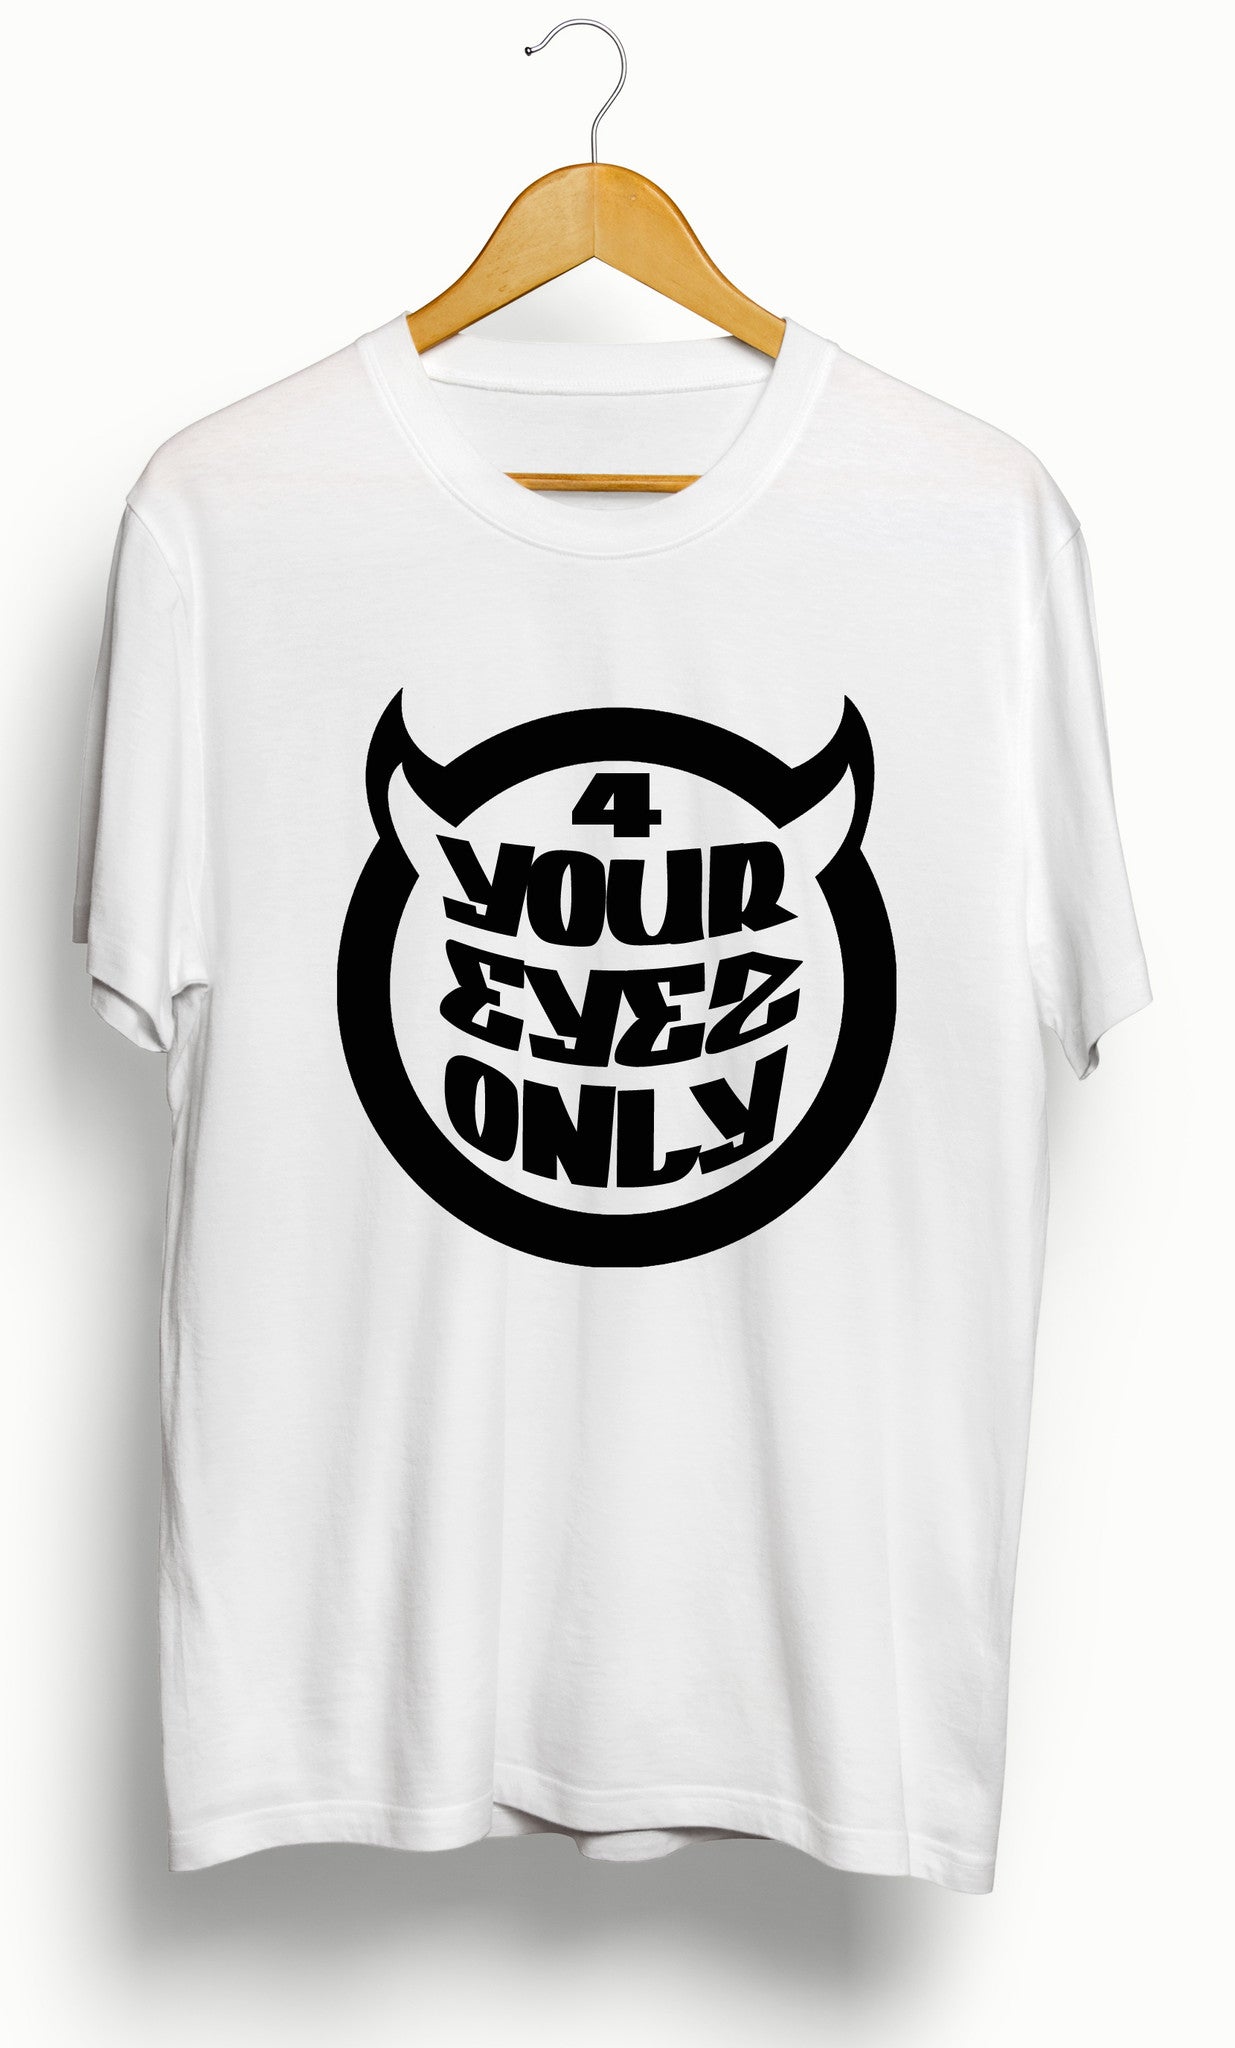 J Cole &quot;4 Your Eyez Only&quot; Album T-Shirt - Ourt